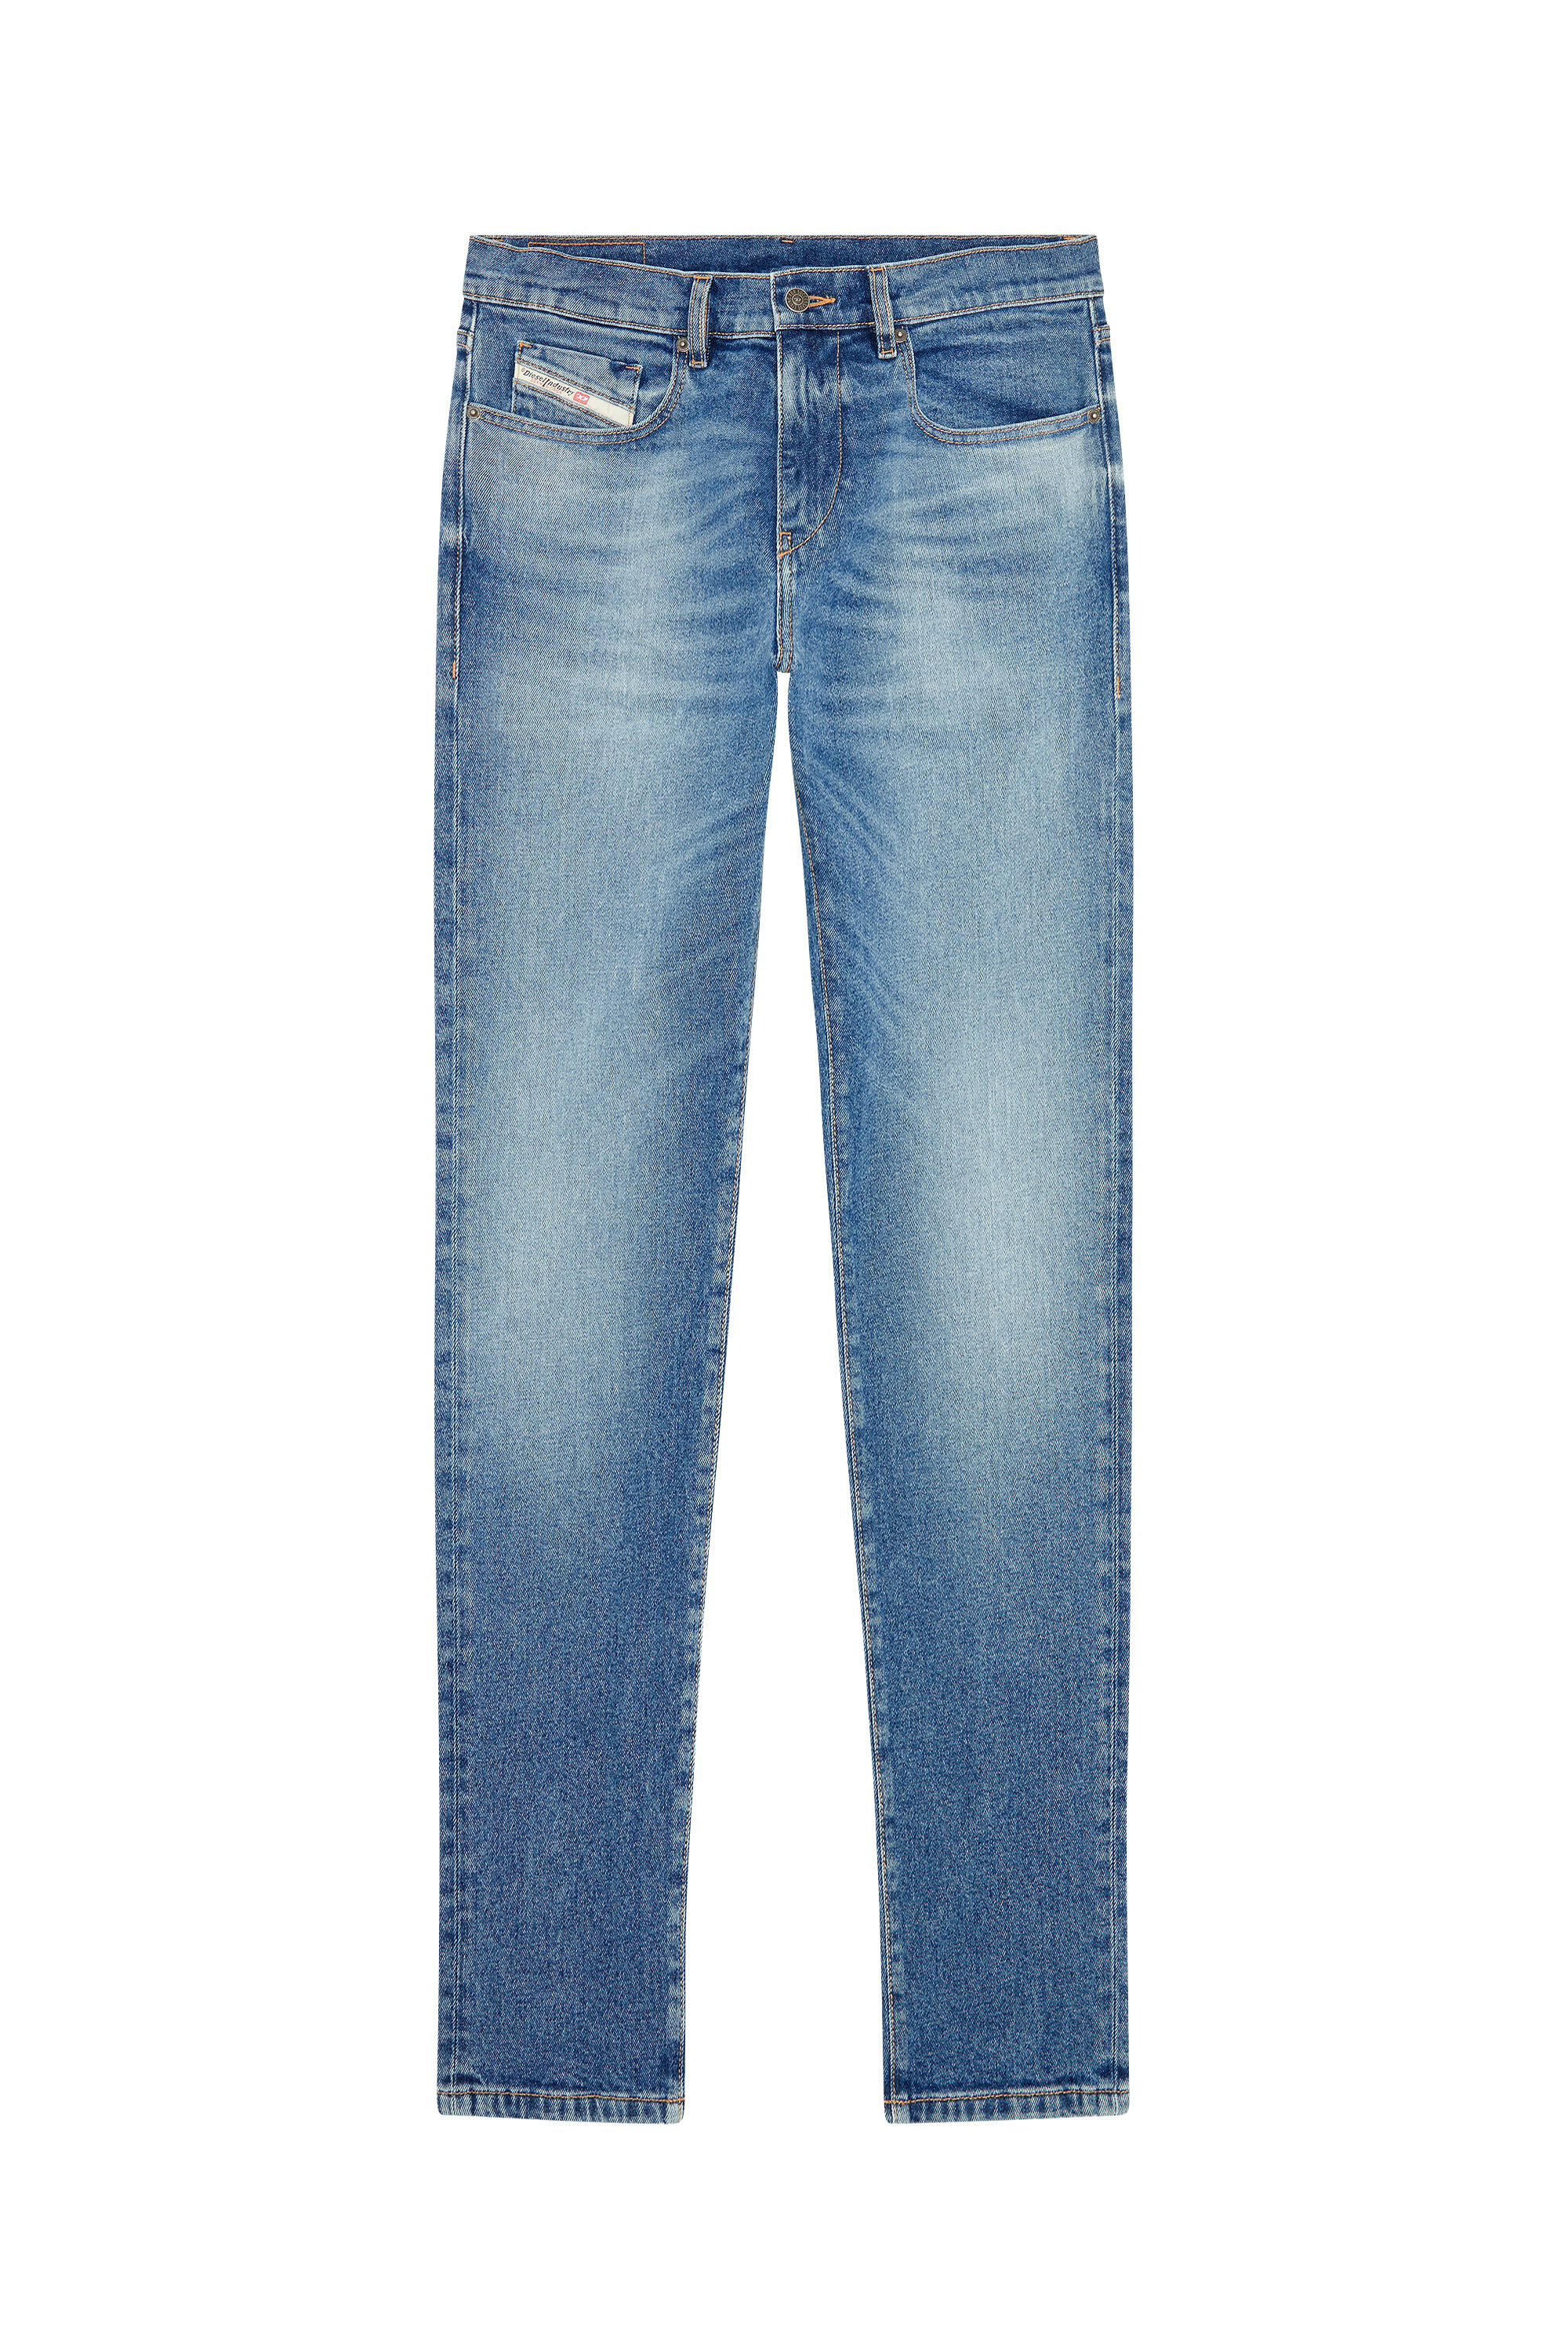 Diesel - Slim Jeans 2019 D-Strukt 0NFAJ, Medium blue - Image 2